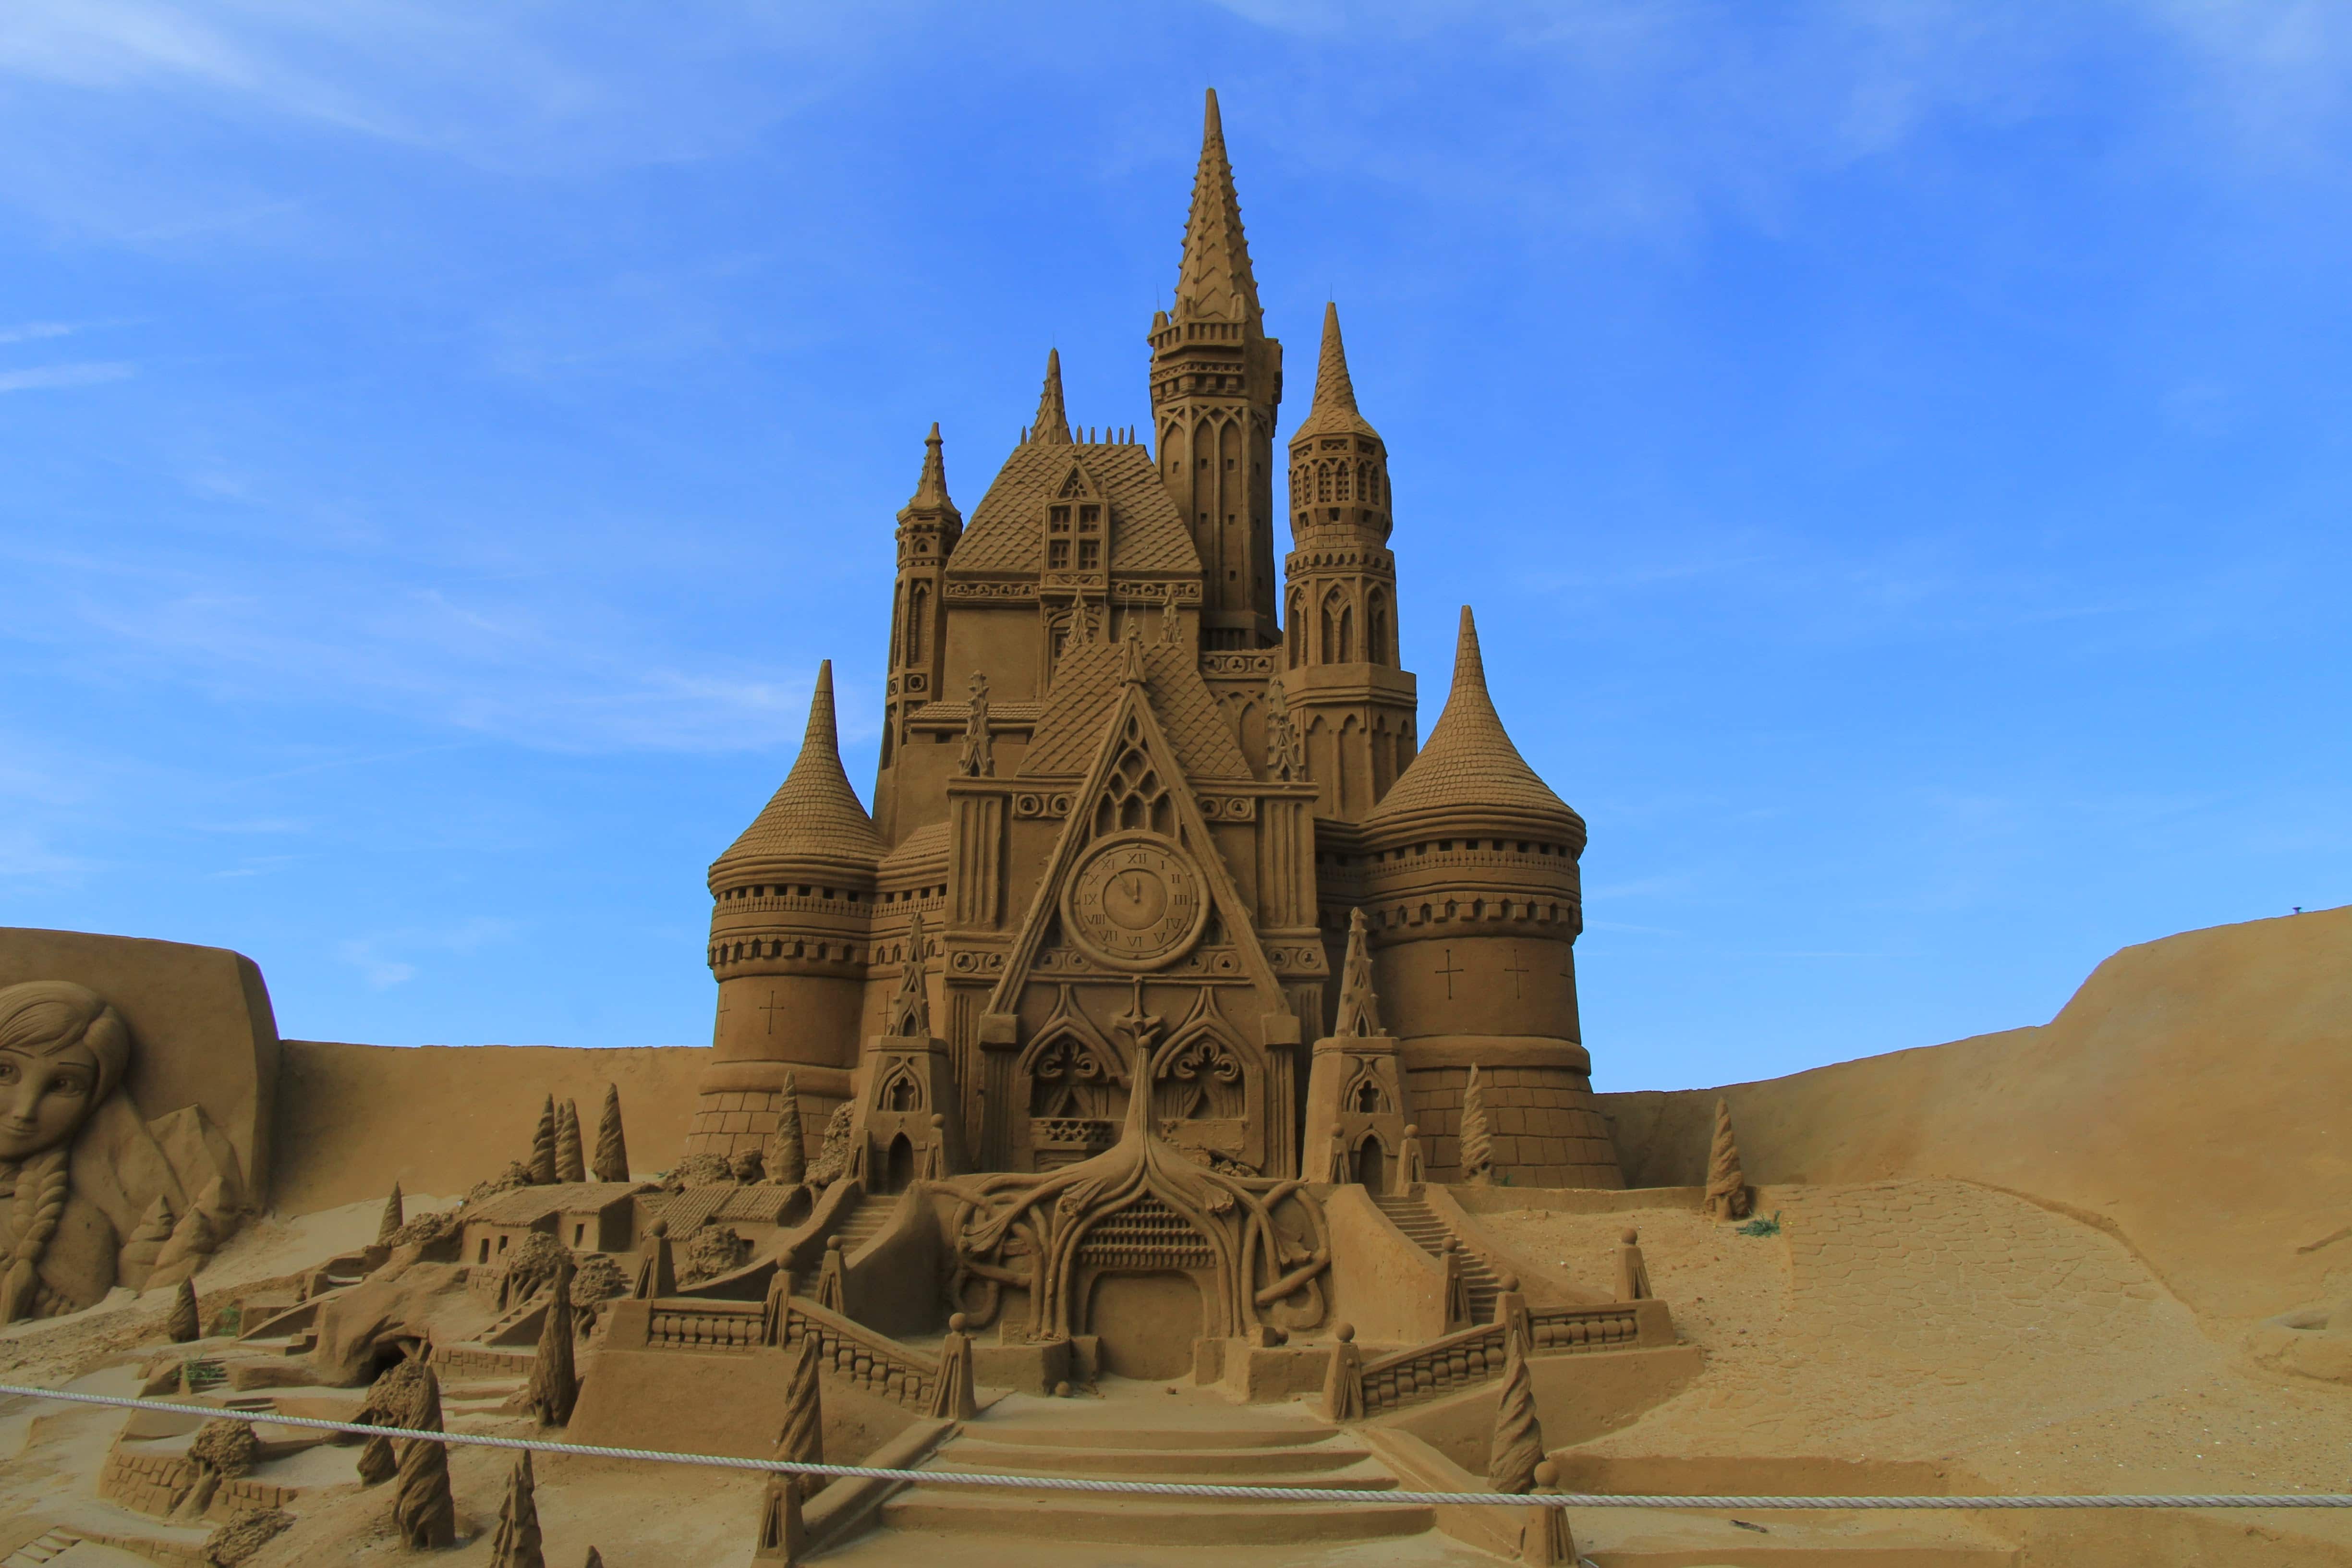 Disney sand castles bring magic to Belgium beach